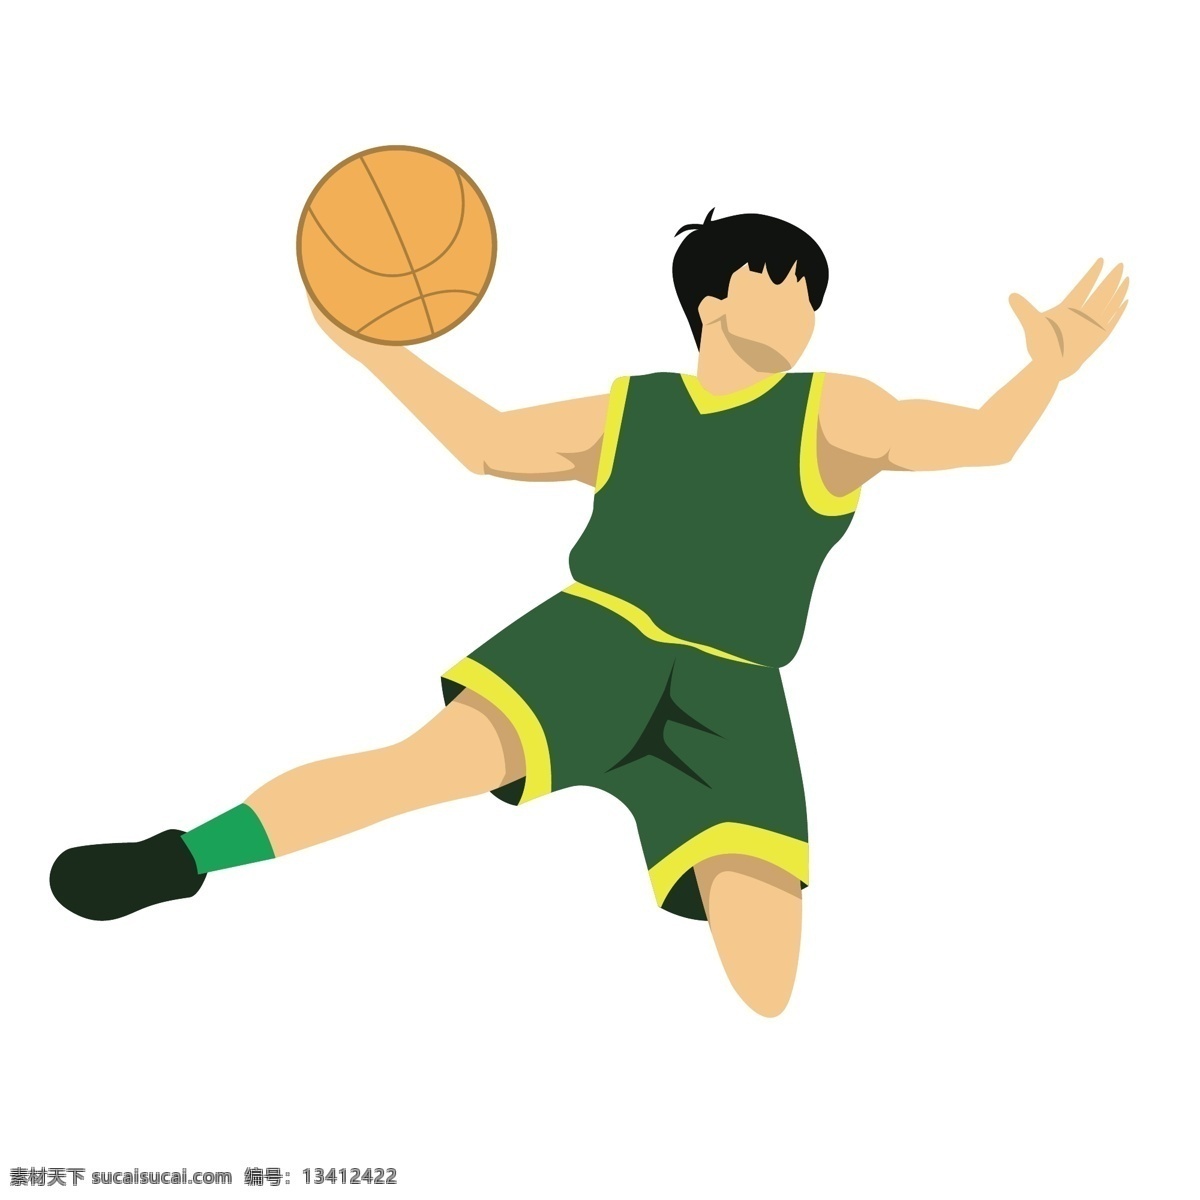 卡通 防守 姿势 矢量 篮球 篮球运动员 运动员 体育 体育运动员 打球 打篮球 打球姿势 投篮姿势 运动姿势